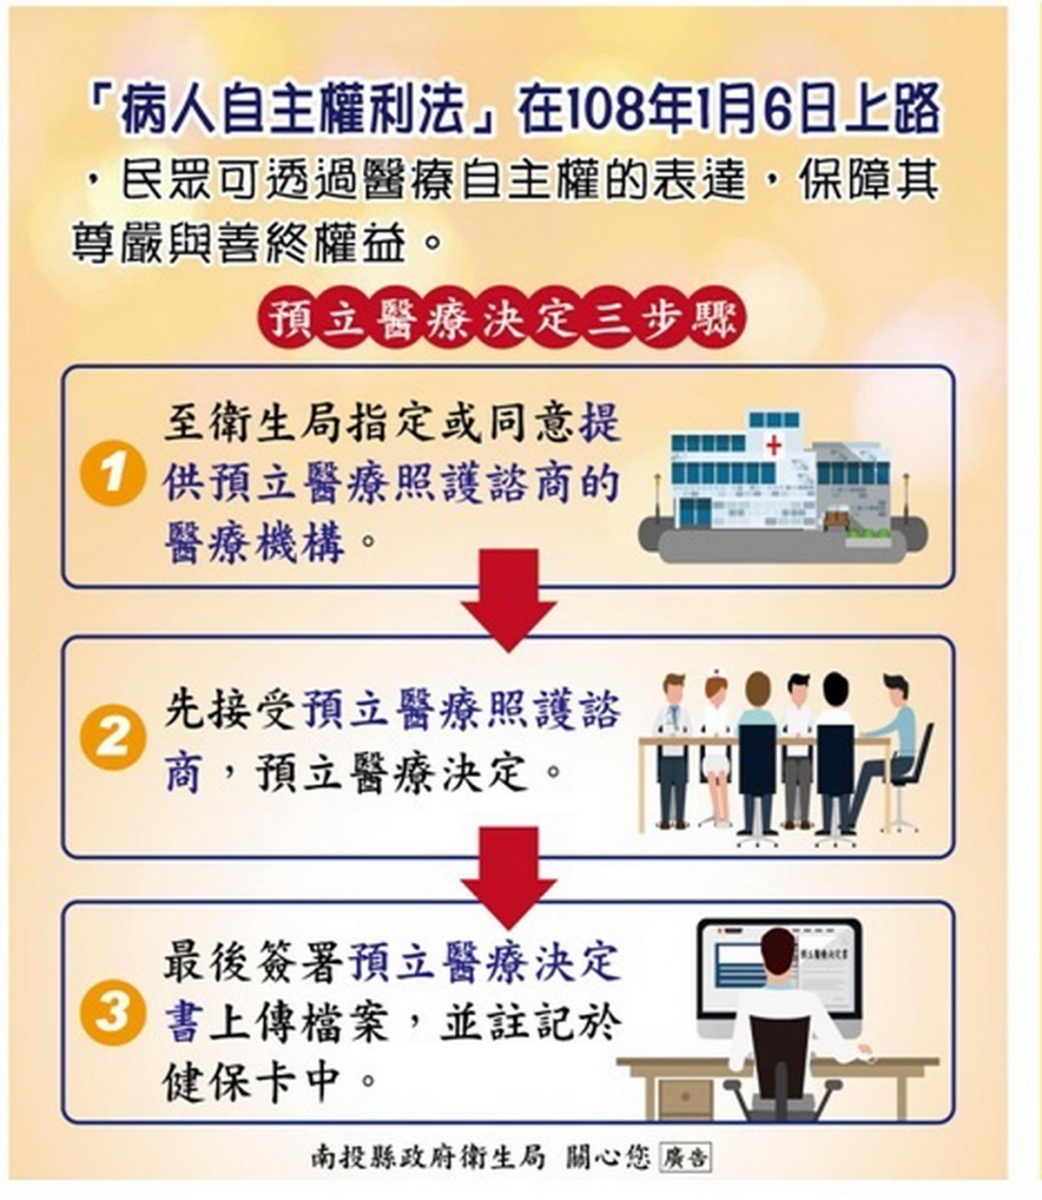 病人自主權利法是啥 你我都該知曉 台灣好新聞taiwanhot Net